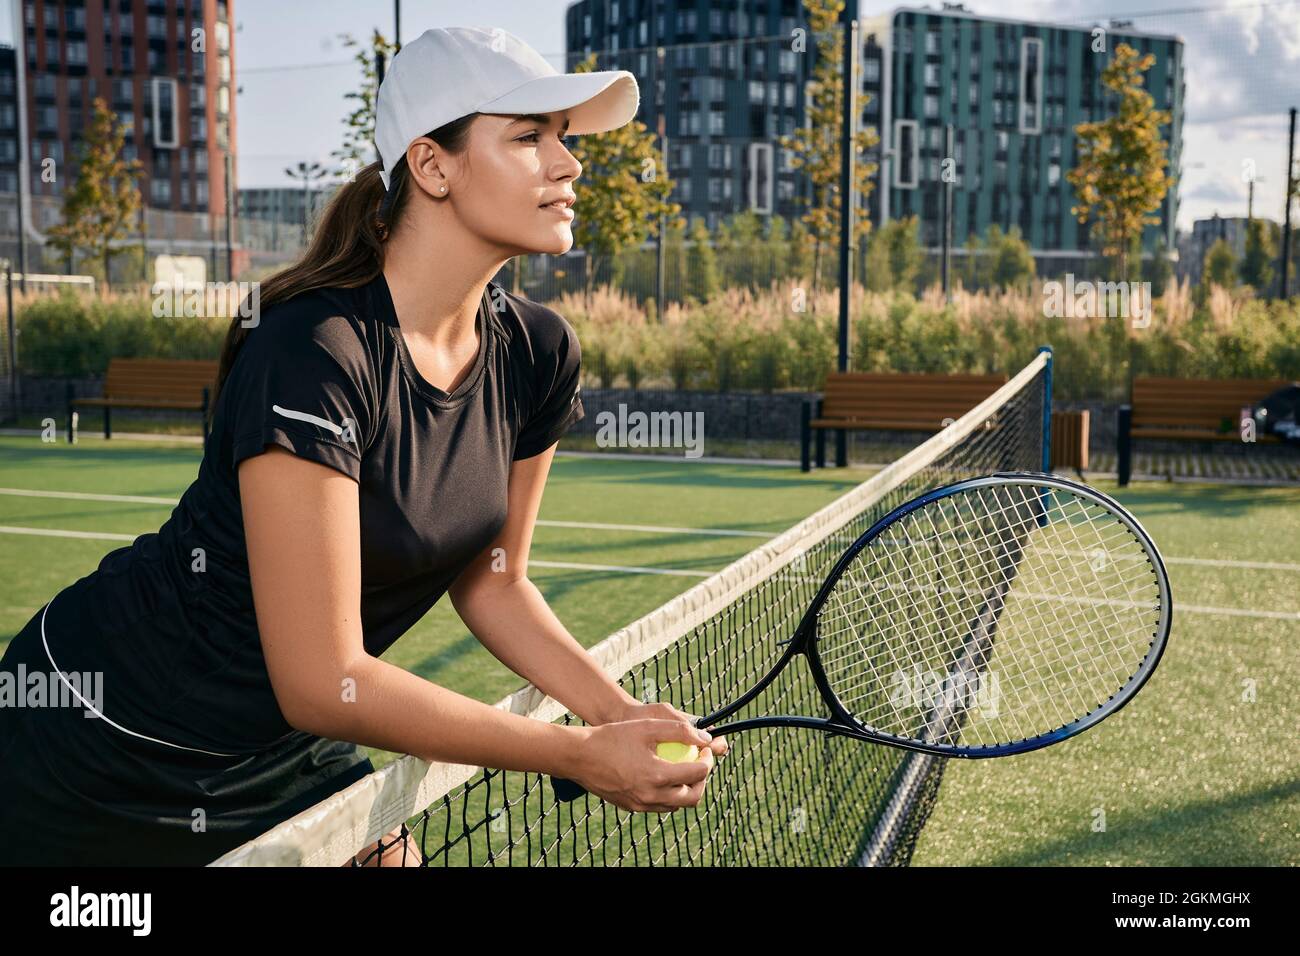 Tennisspielerin in Sonnenkappe lehnt sich auf das Netz, während sie auf dem Platz steht und Tennisschläger und -Ball hält, schaut in die Ferne auf ihre Gegnerin im Tennisspiel Stockfoto